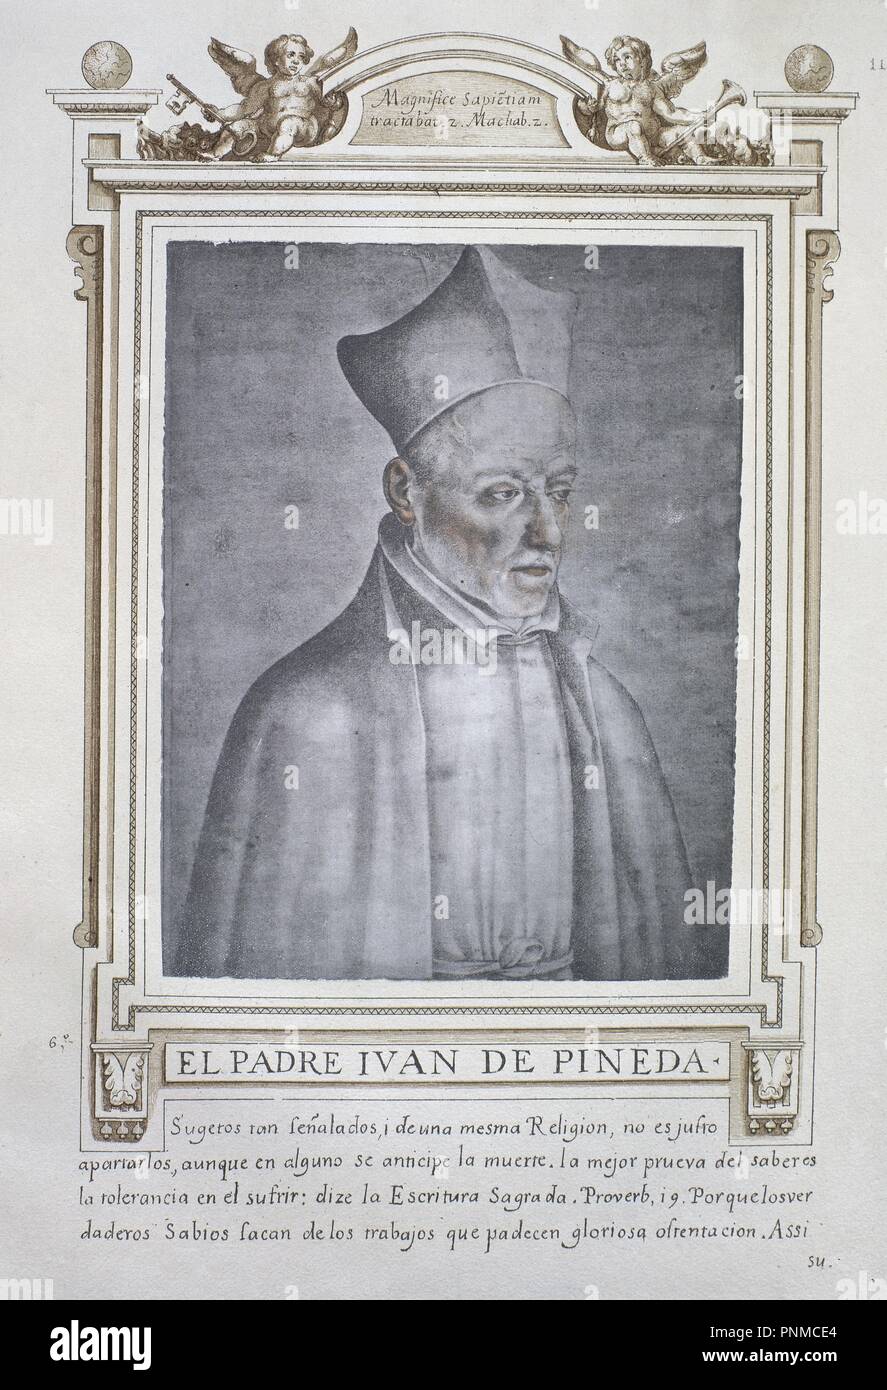 JUAN DE PINEDA - LIBRO DE RETRATOS DE ILUSTRES Y MEMORABLES VARONES - 1599. Author: PACHECO, FRANCISCO. Location: BIBLIOTECA NACIONAL-COLECCION. MADRID. SPAIN. Stock Photo